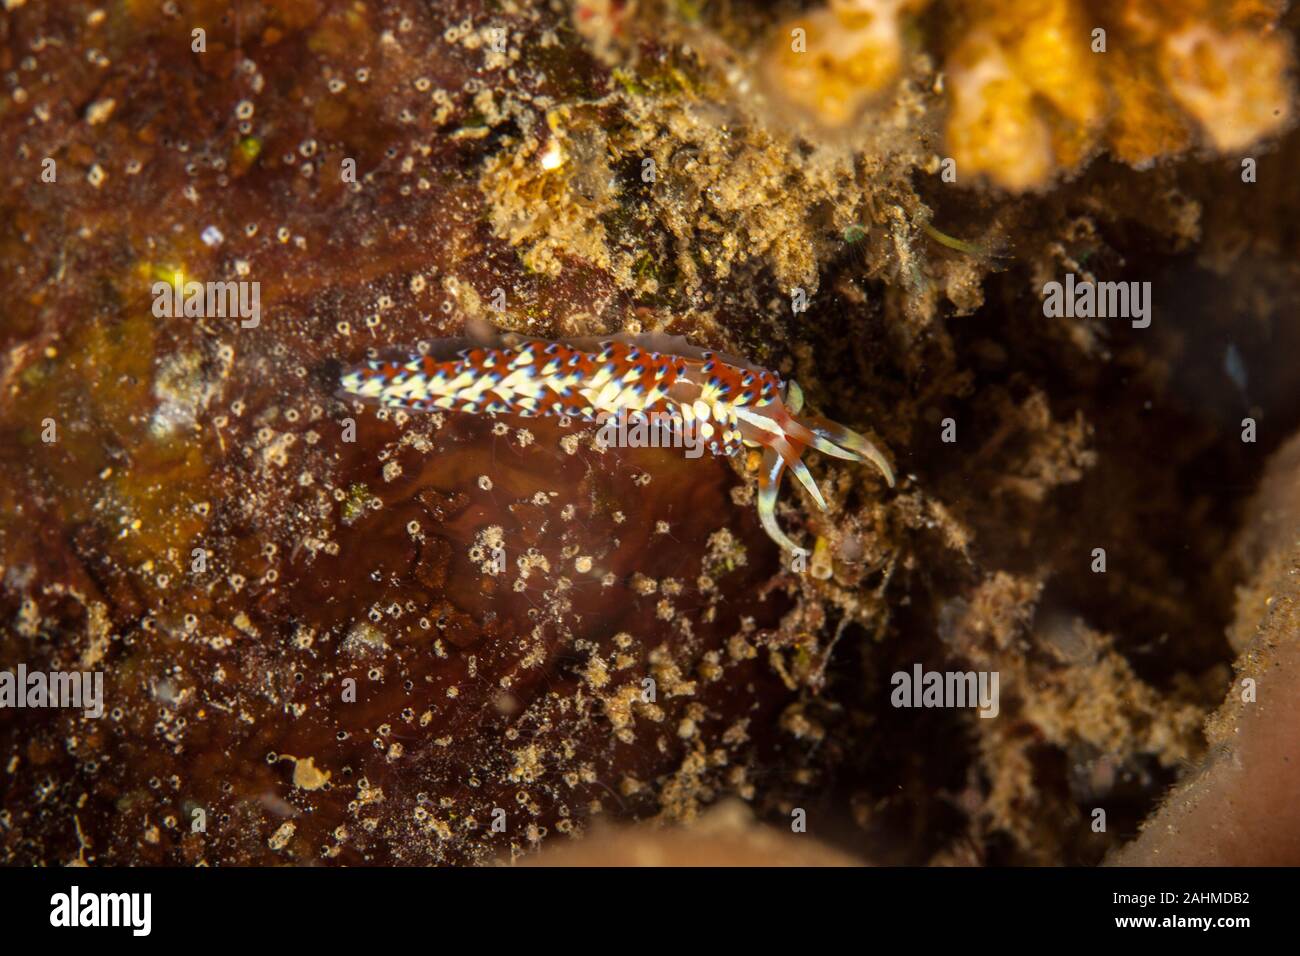 Caloria indica ist eine Pflanzenart aus der Gattung der Sea Slug, ein aeolid Nacktschnecke aus der Familie Facelinidae Stockfoto